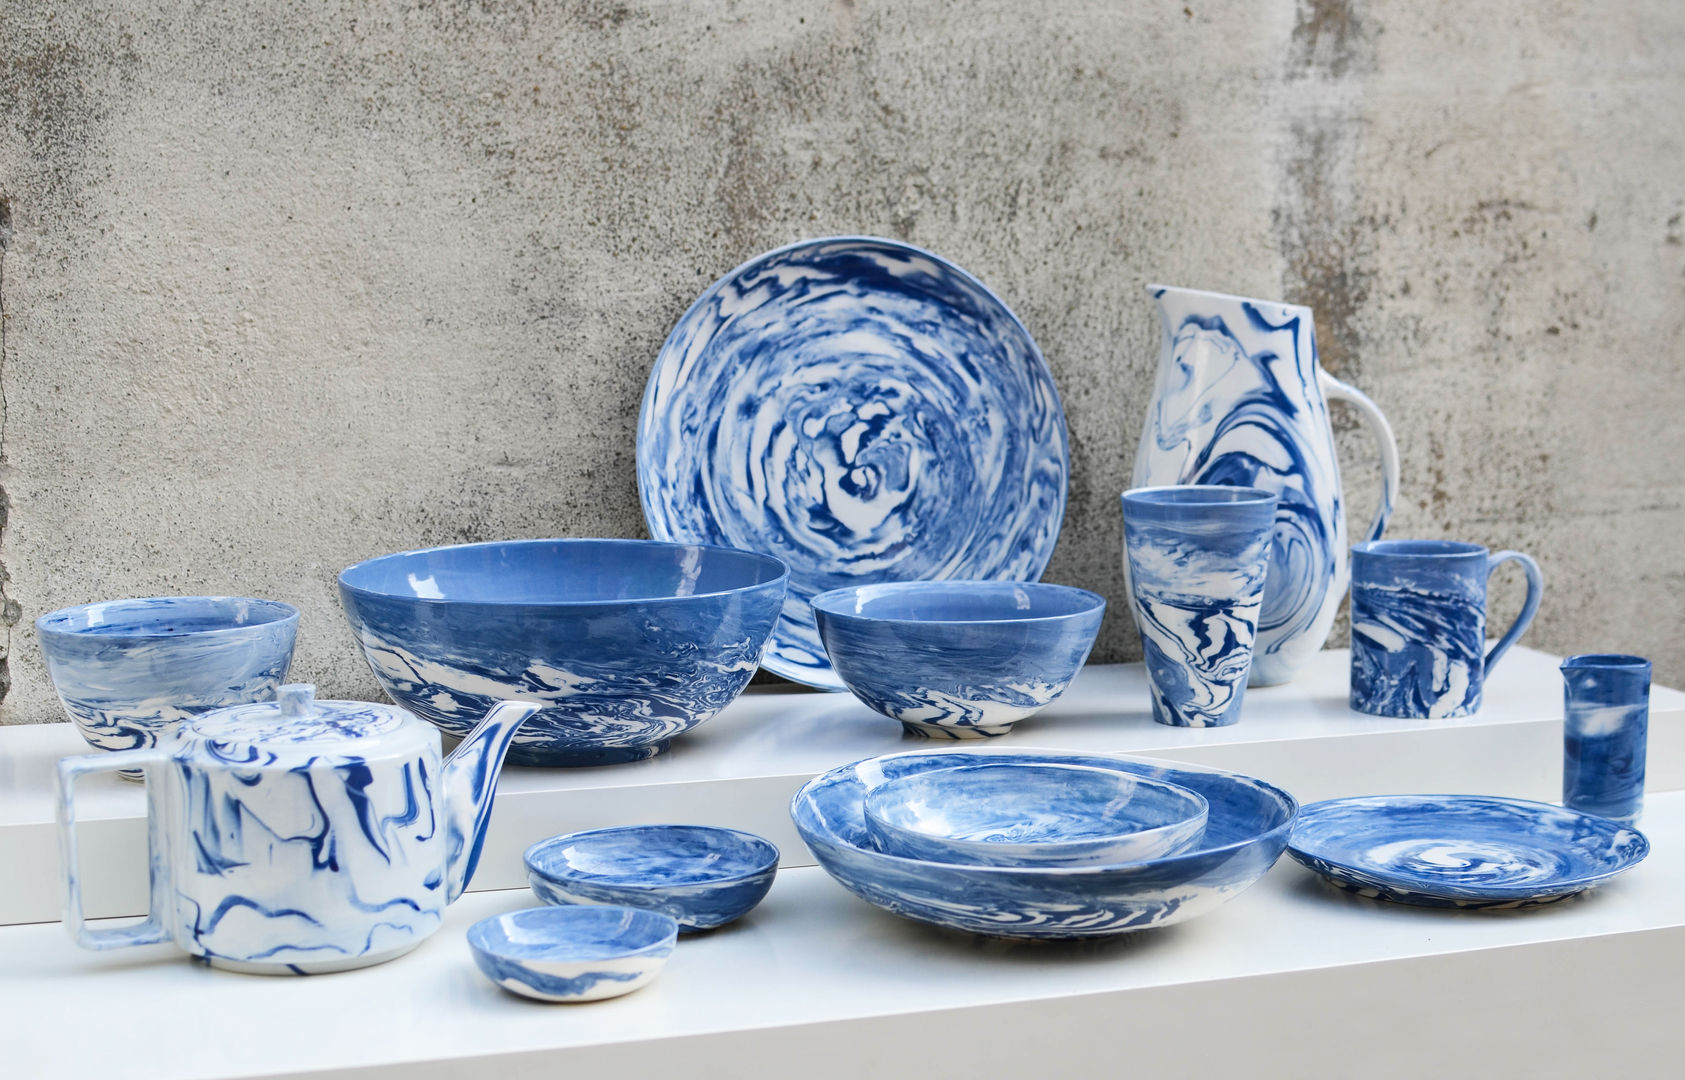 Blue and White Collection Nom Living Comedores de estilo moderno Vasos y vajilla